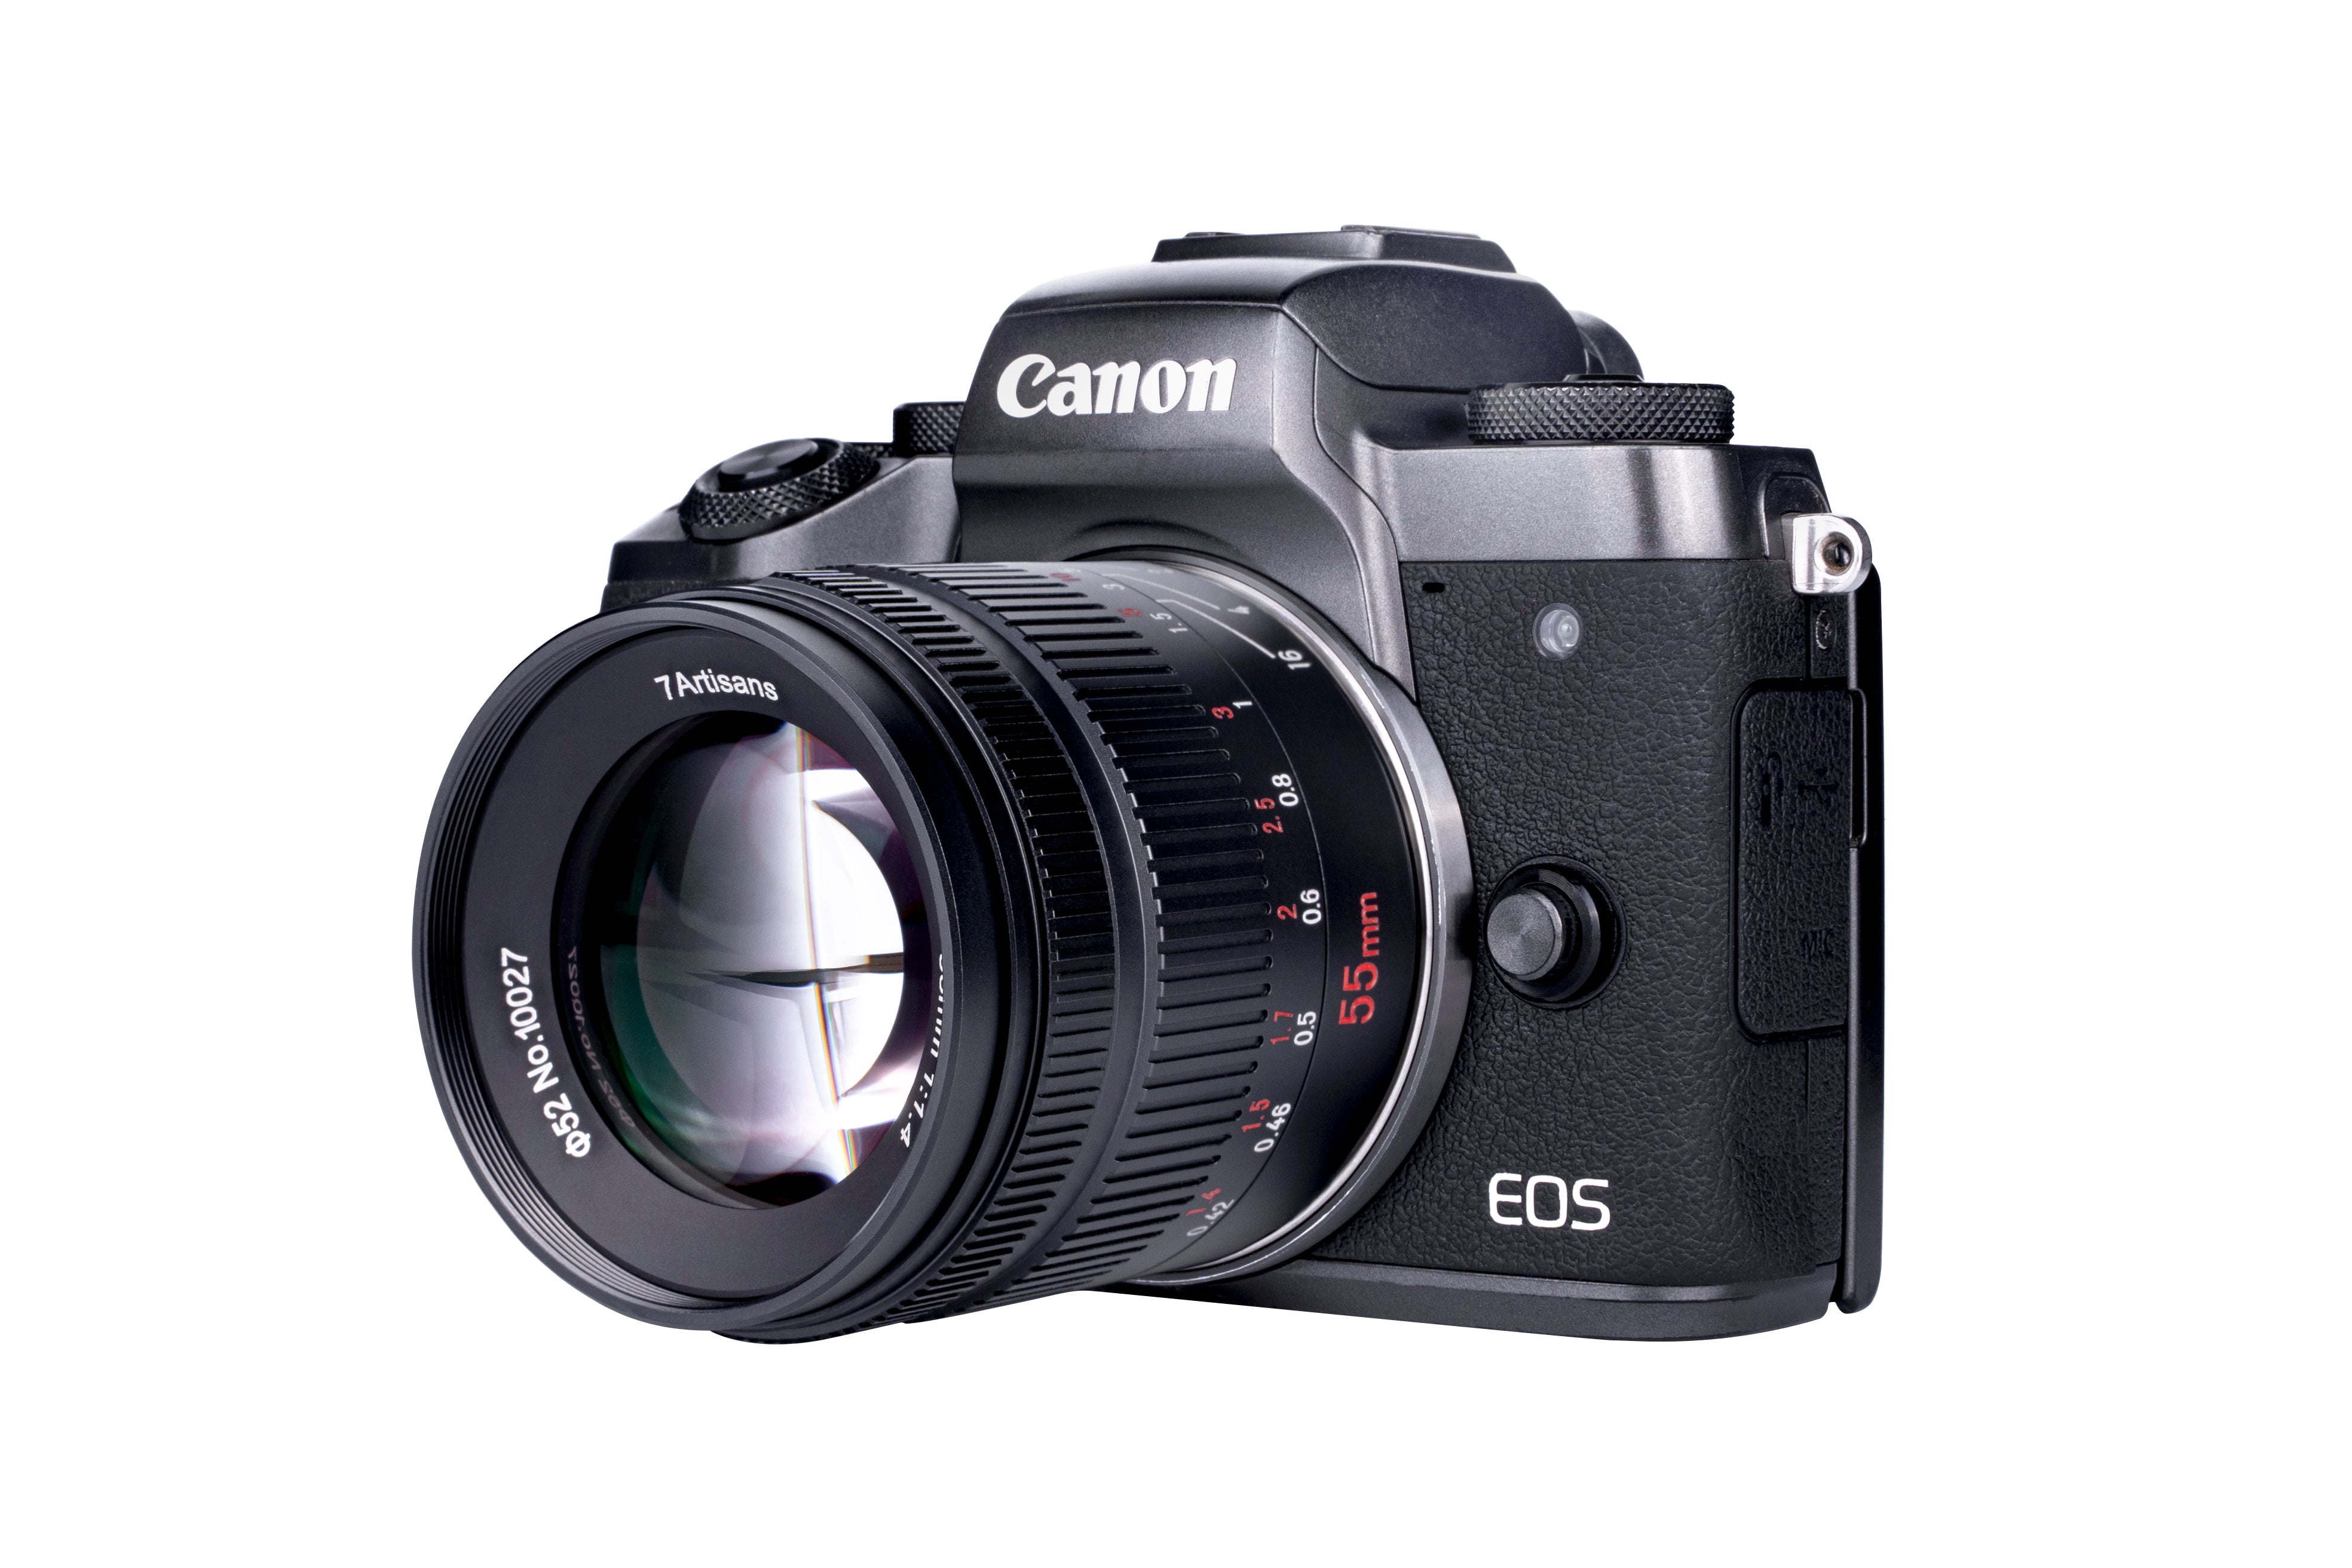 55mm f/1.4 Mark II APS-C lens for E/EOS-M/EOS-R/FX/M43/Z